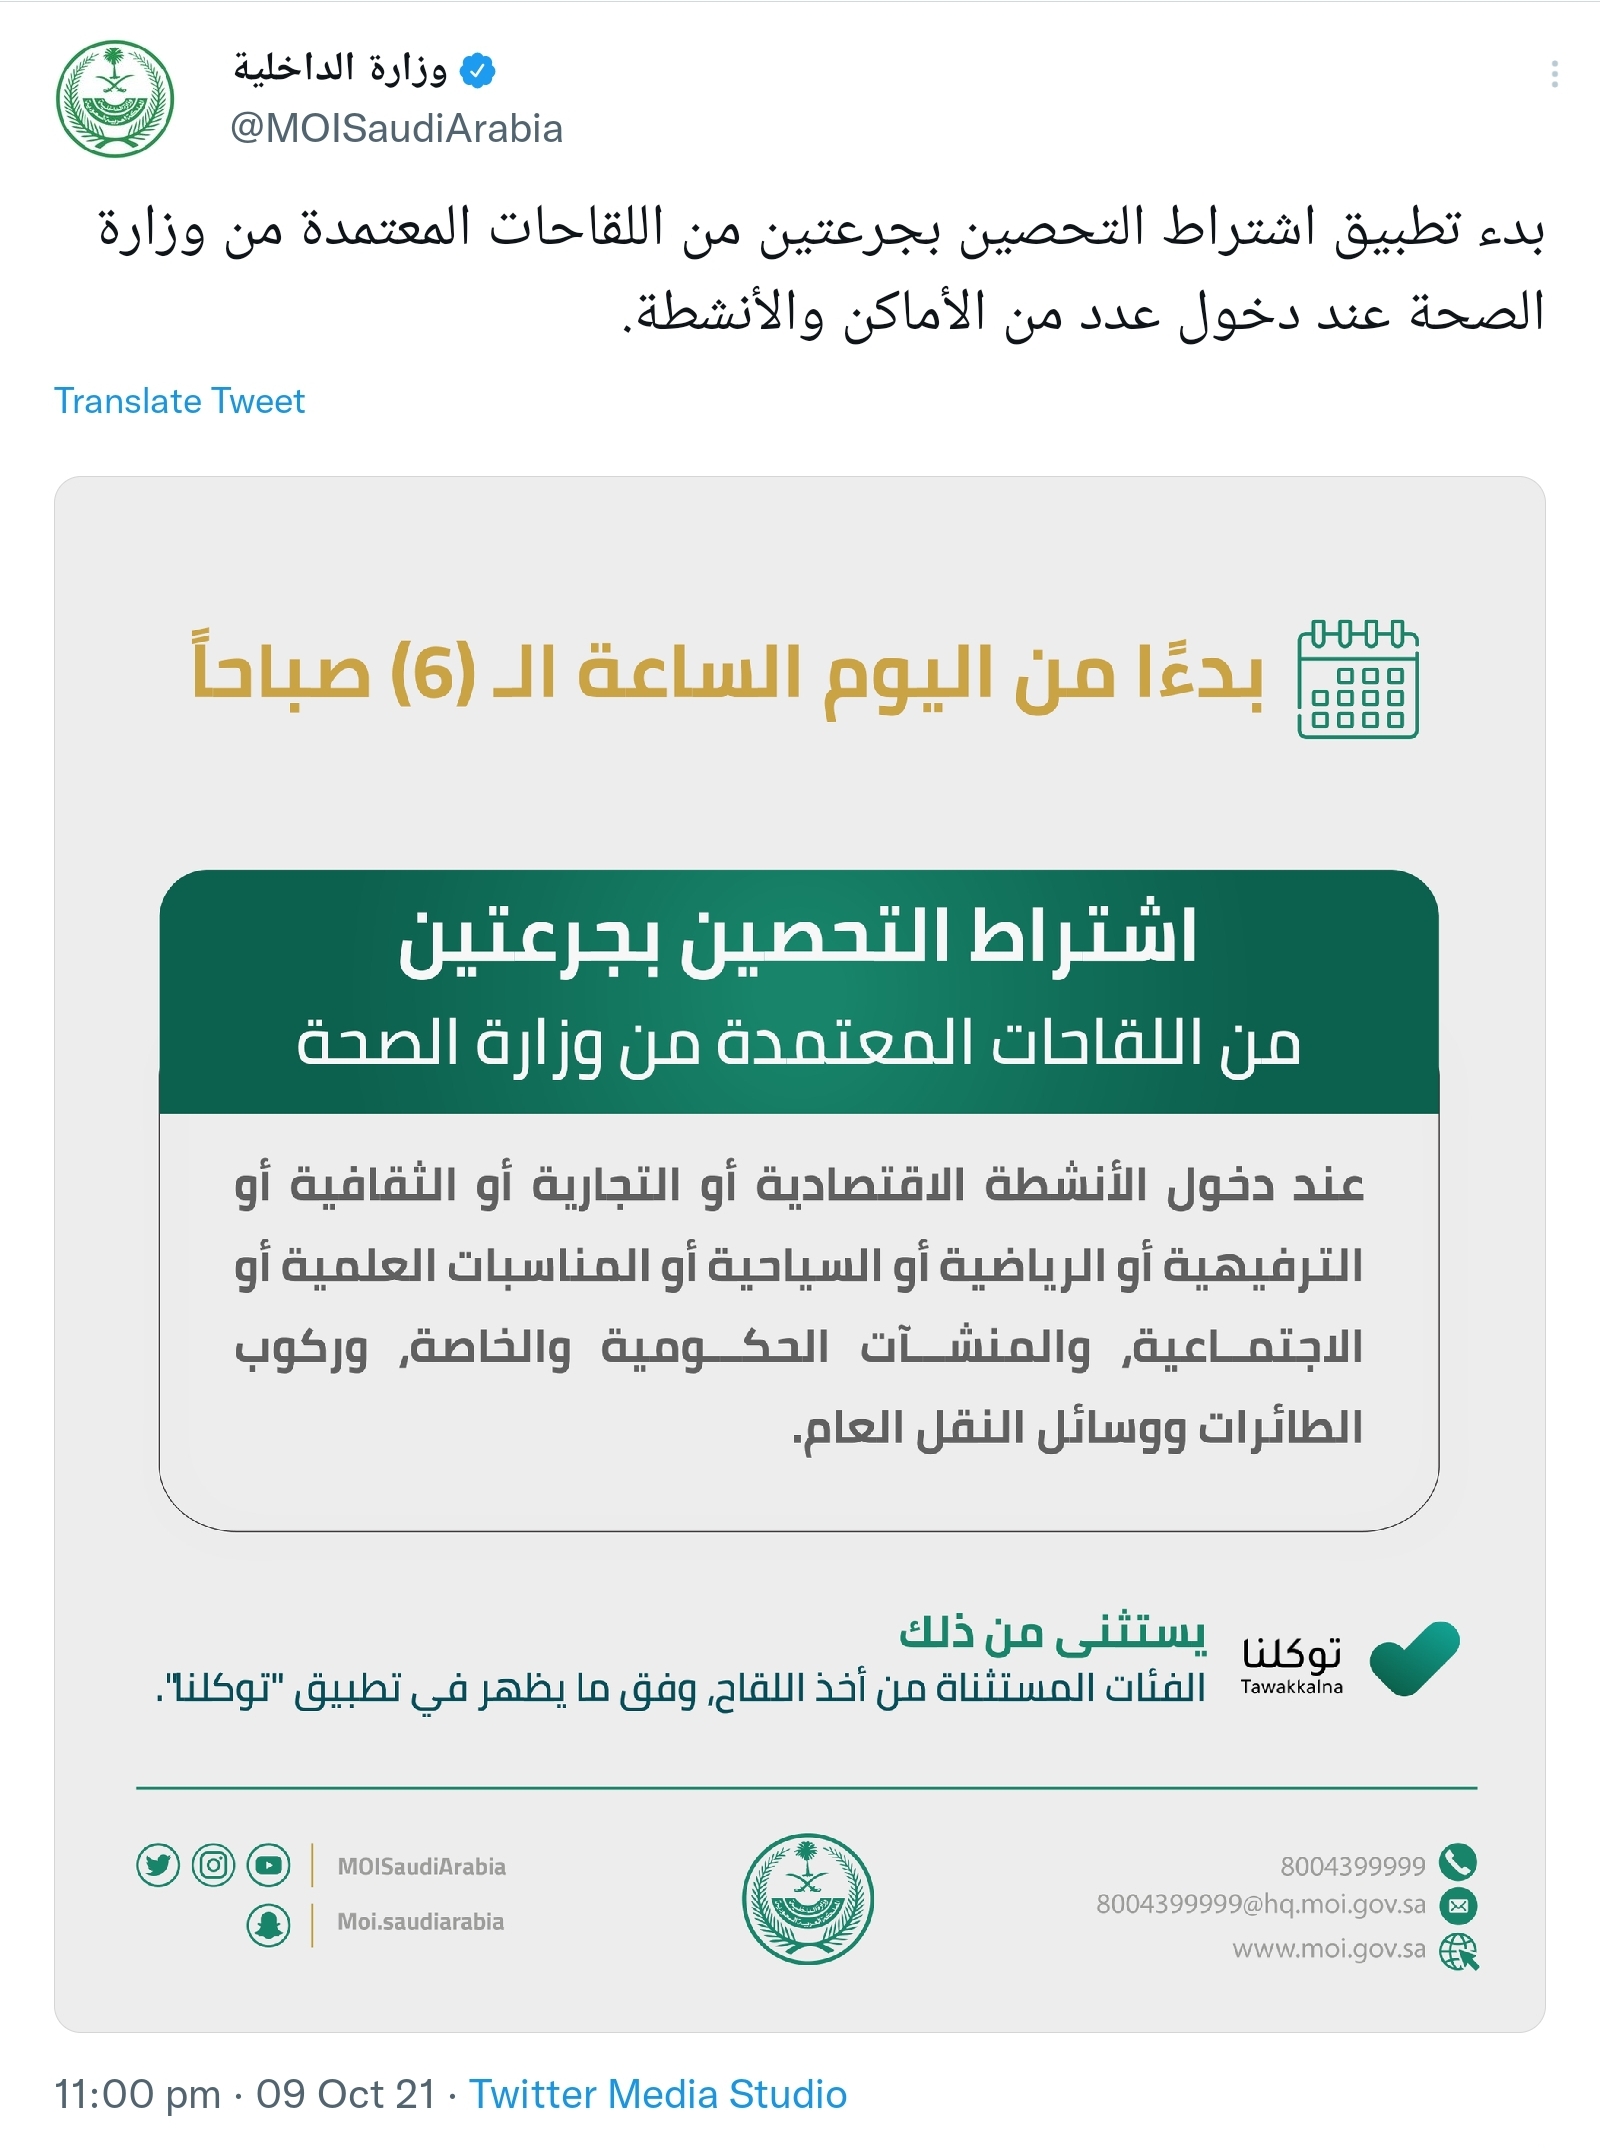 السعودية تعلن بدء تطبيق اشتراط التحصين ضد كورونا لدخول المنشآت الحكومية والخاصة 2